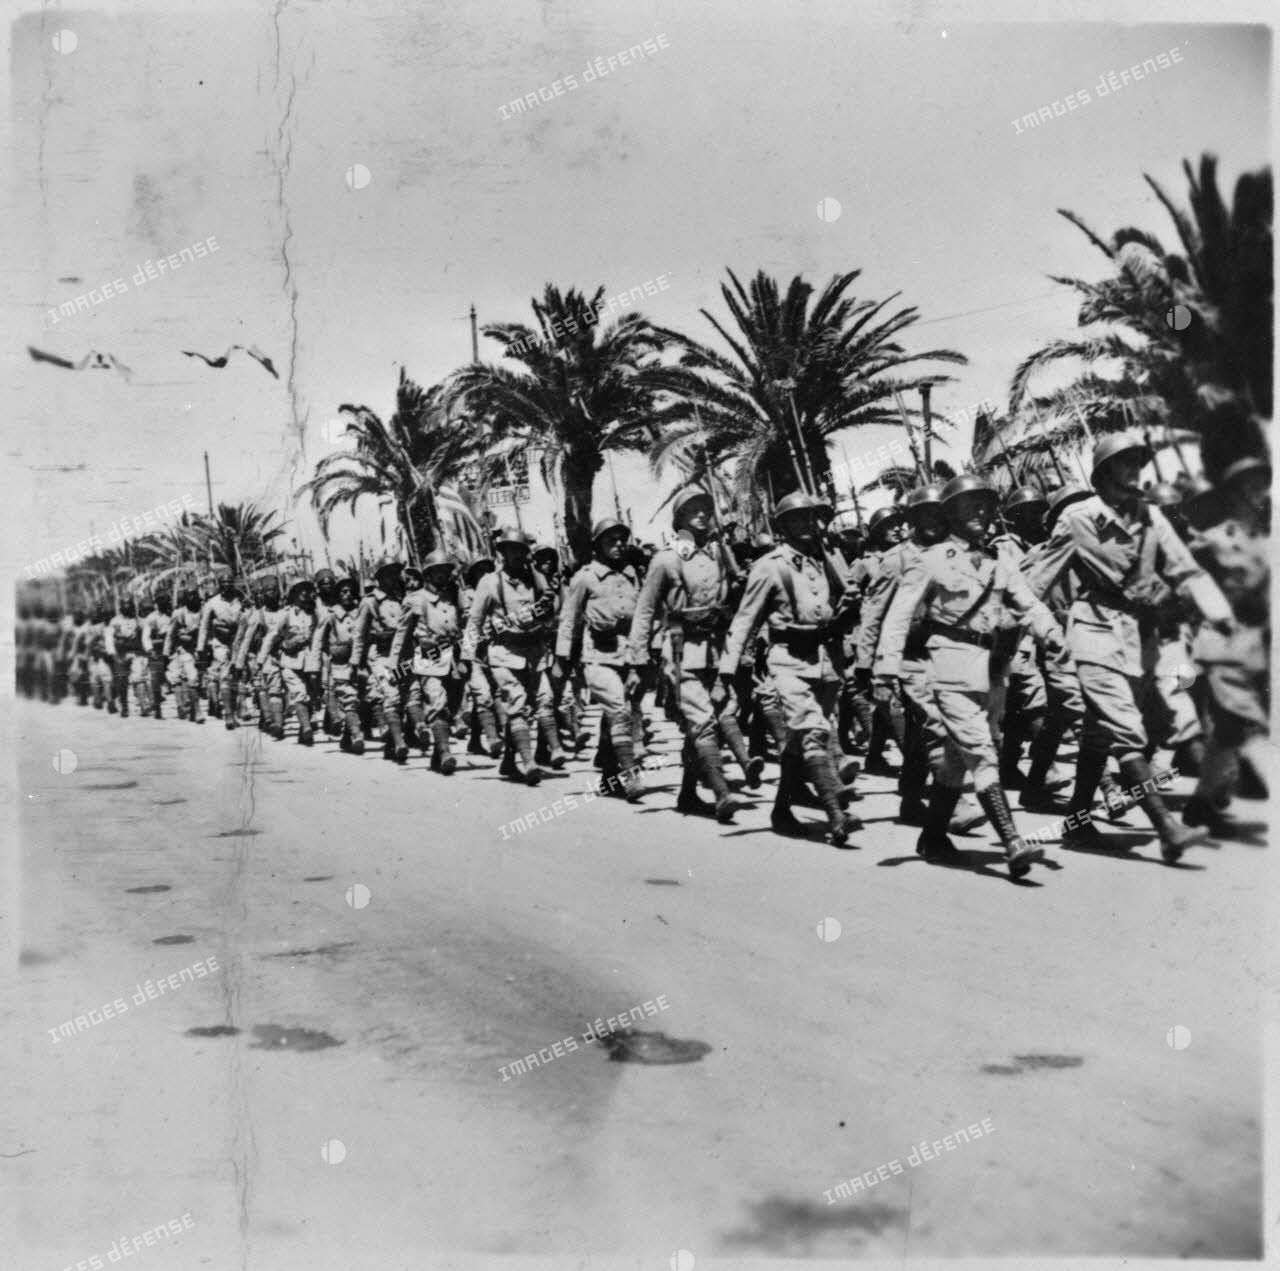 Défilé d'une unité des troupes coloniales lors de la cérémonie célébrant la victoire alliée à l'issue de la campagne de Tunisie.